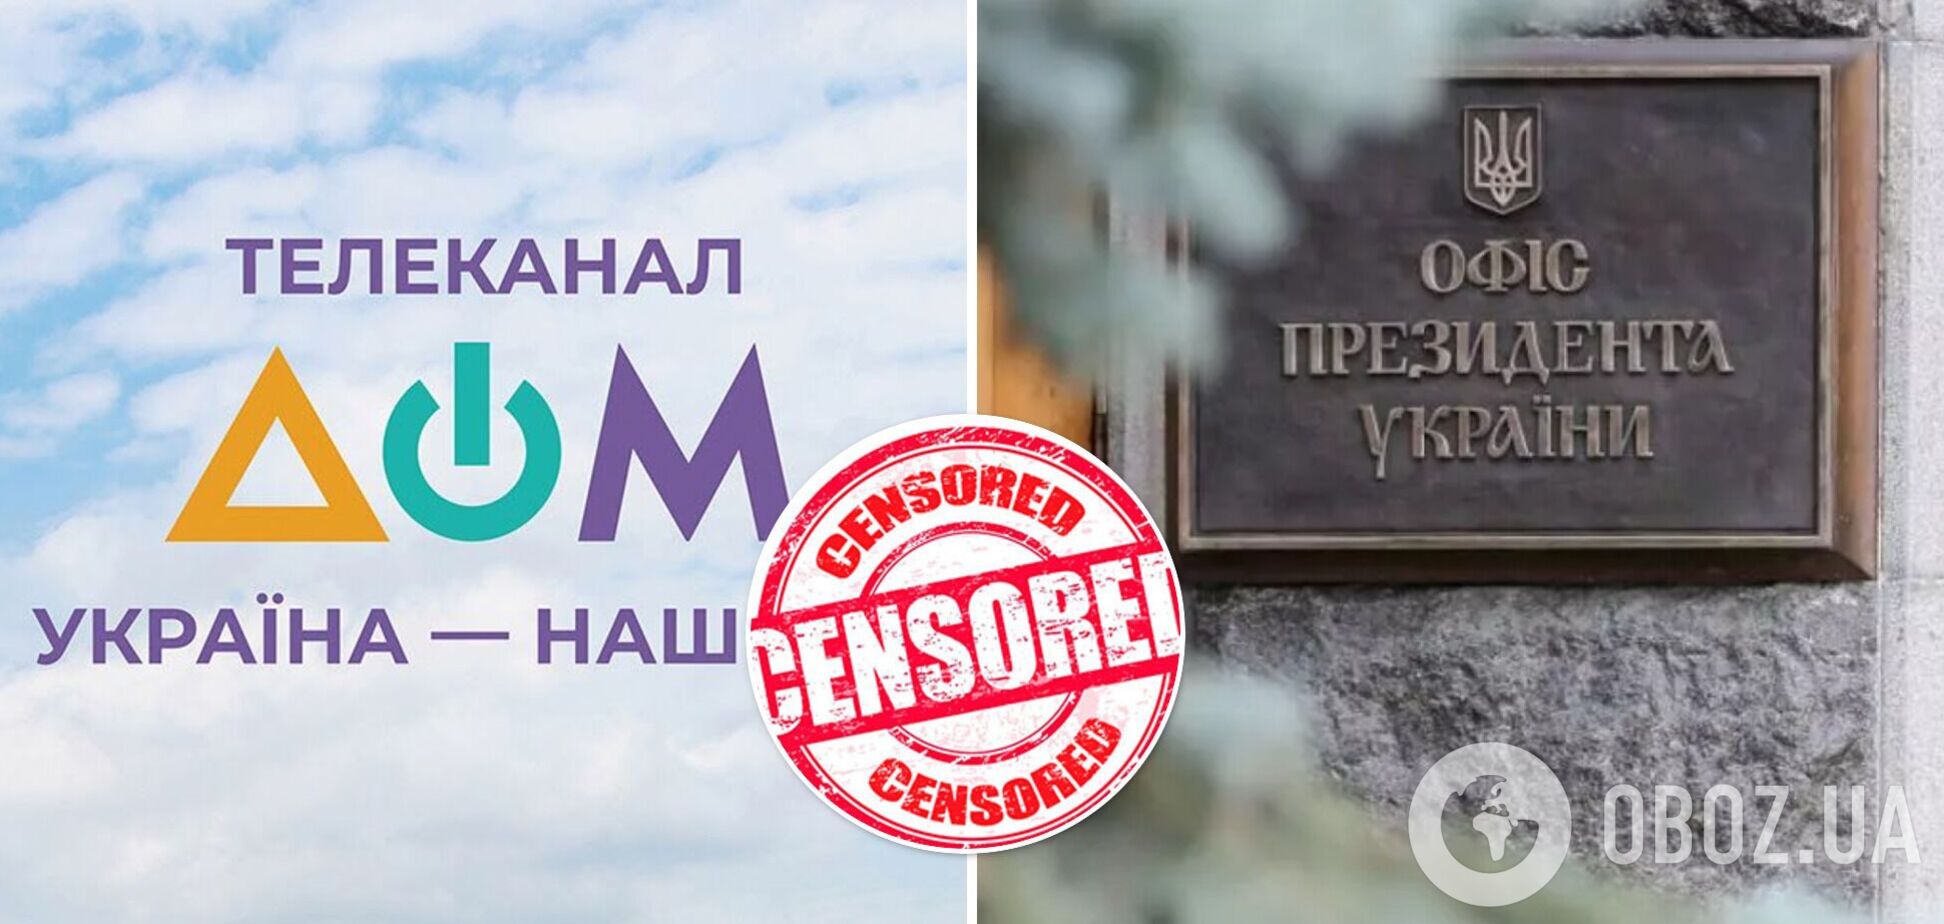 В СМИ заявили о цензуре на канале 'ДОМ' со стороны ОП